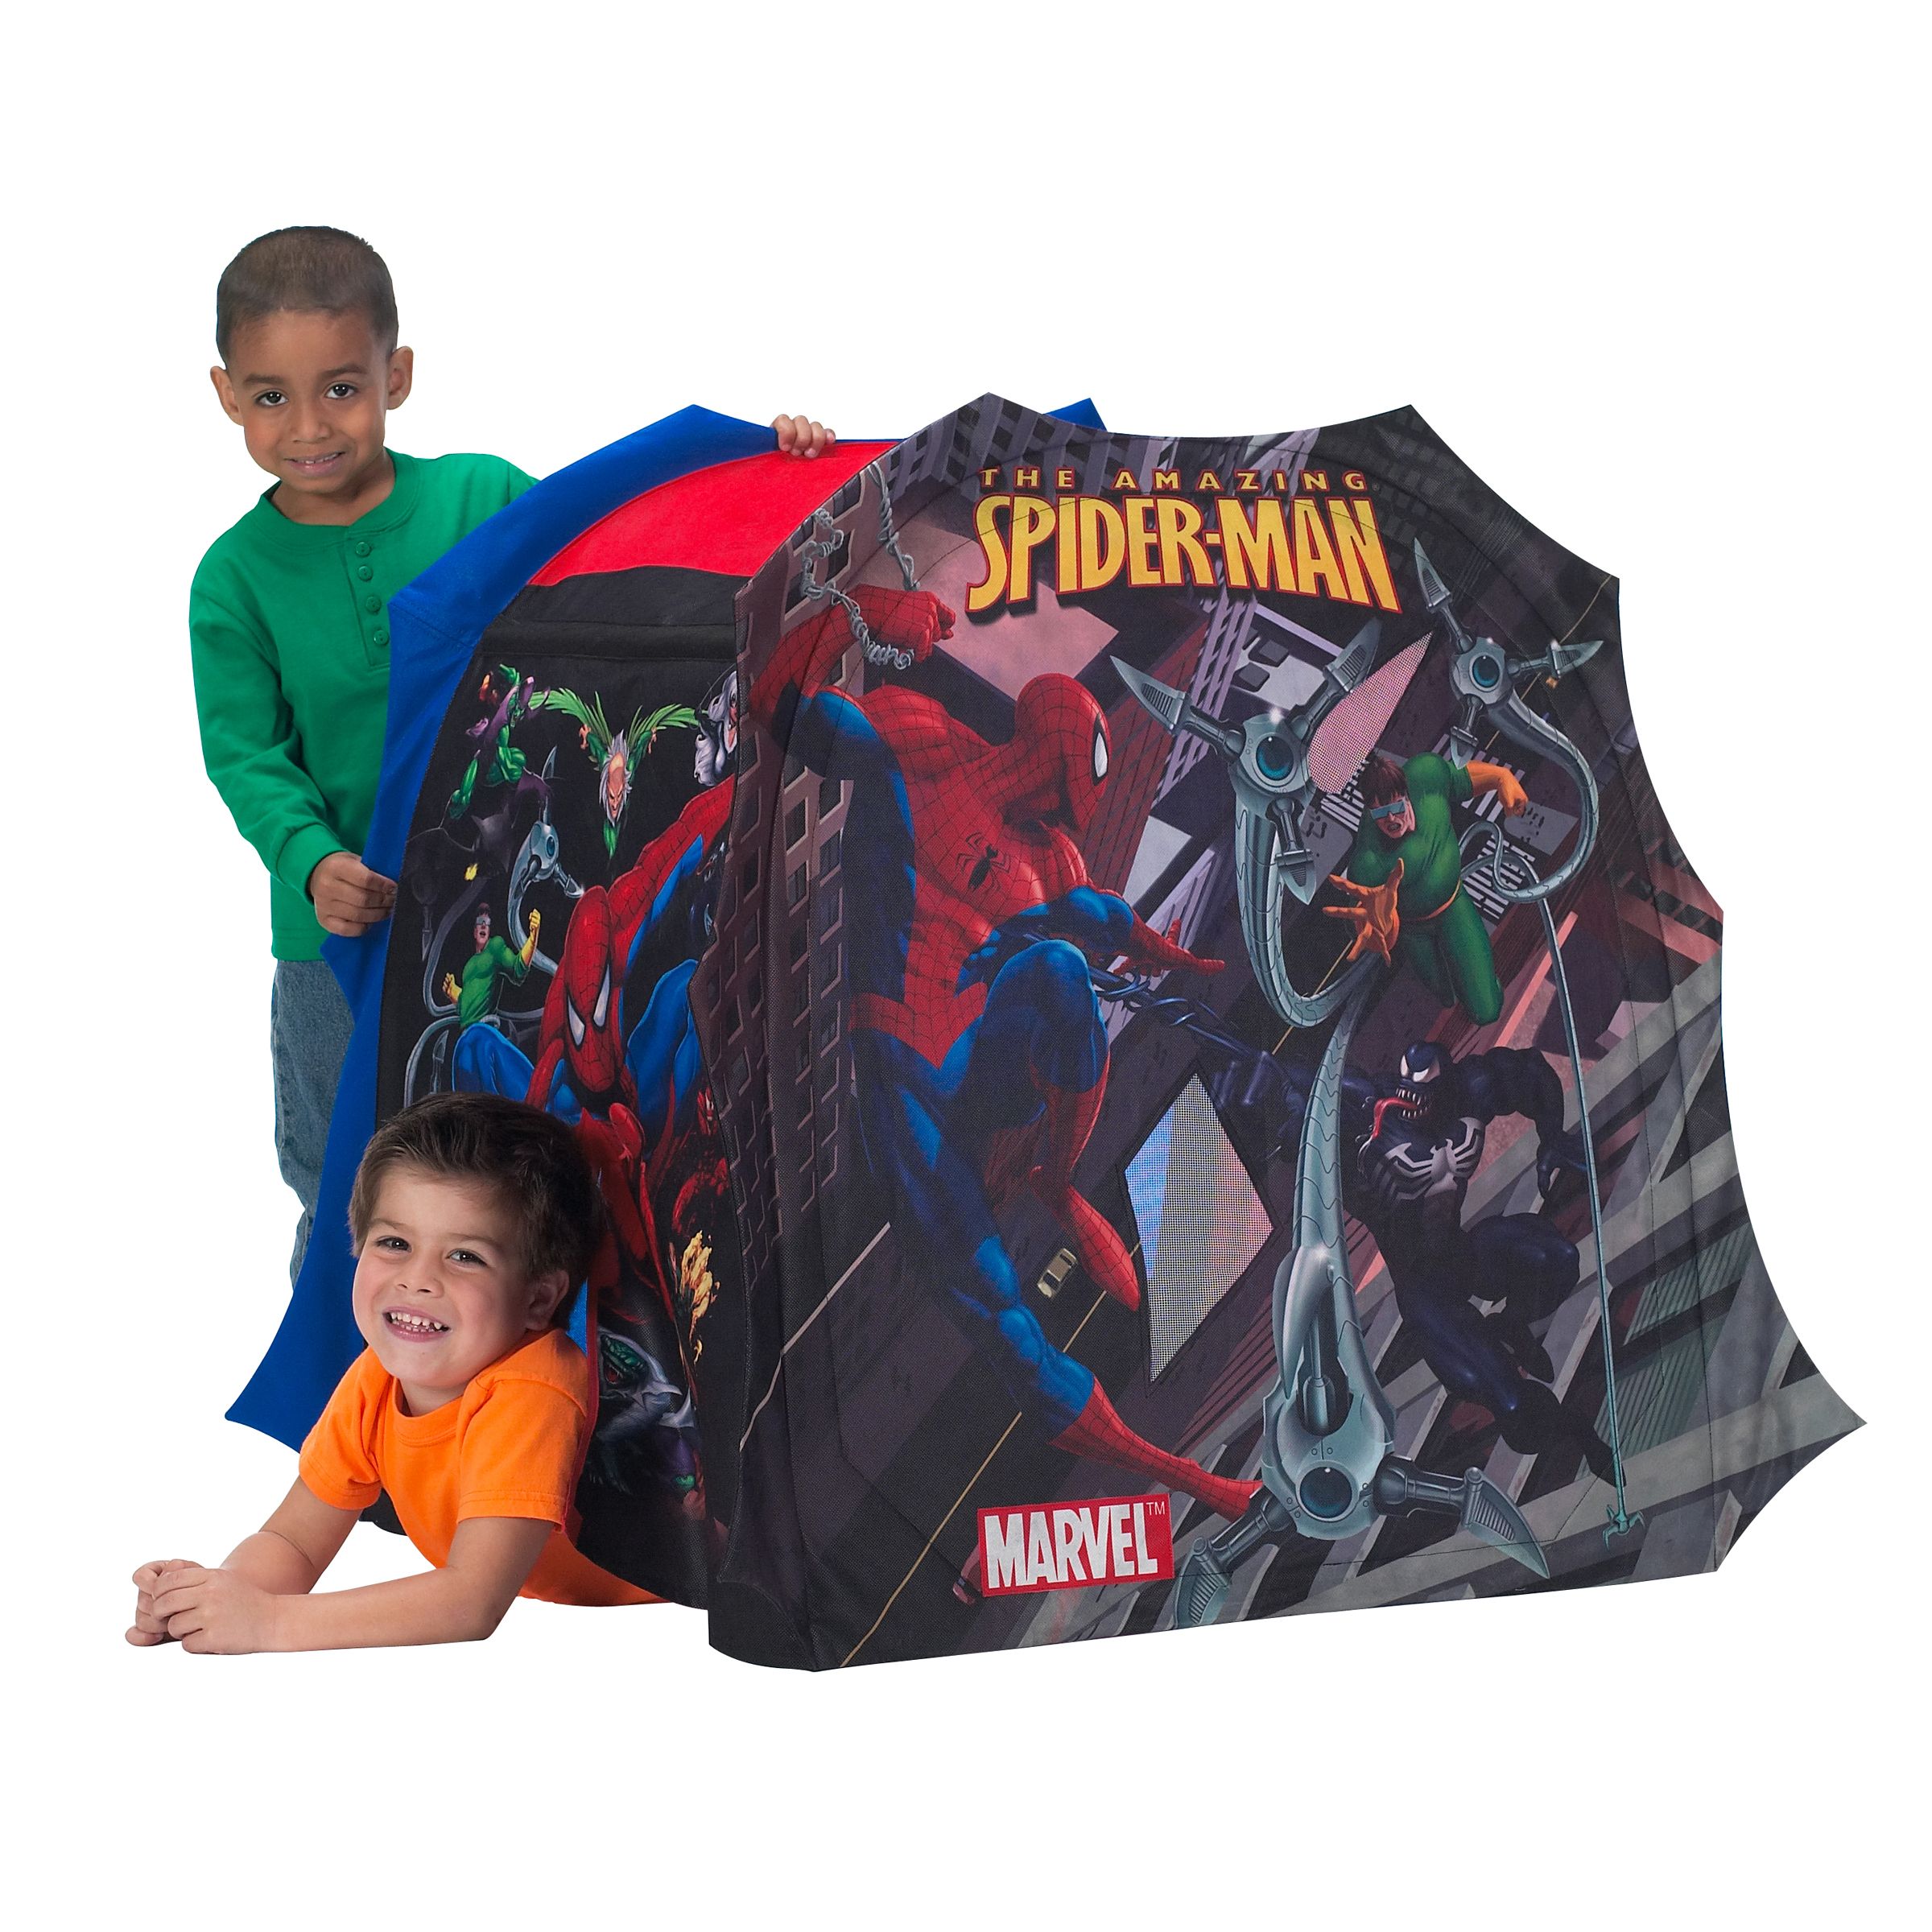 Amazing Spider-Man Hideaway Tent